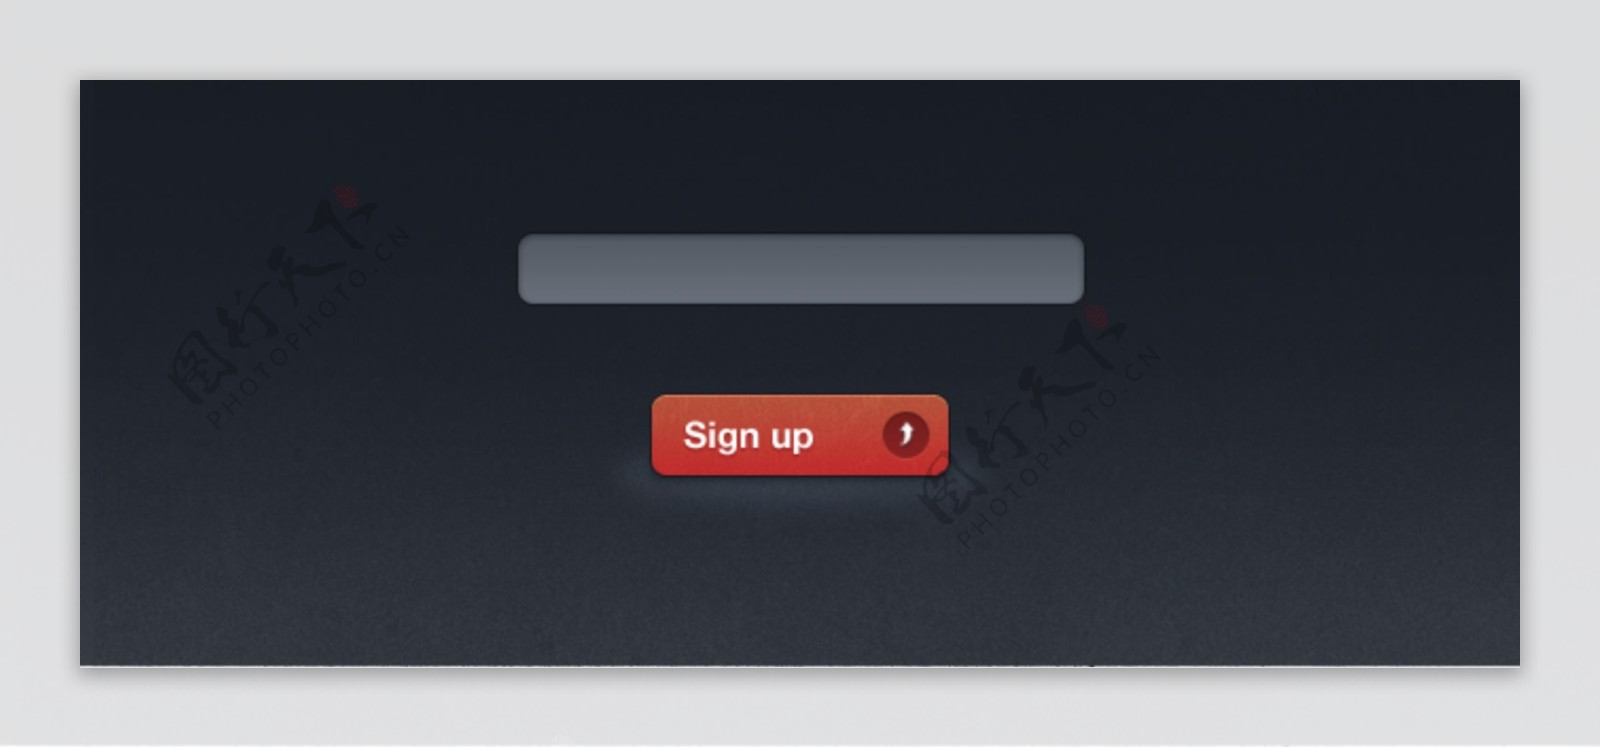 红色按钮和输入框UI设计